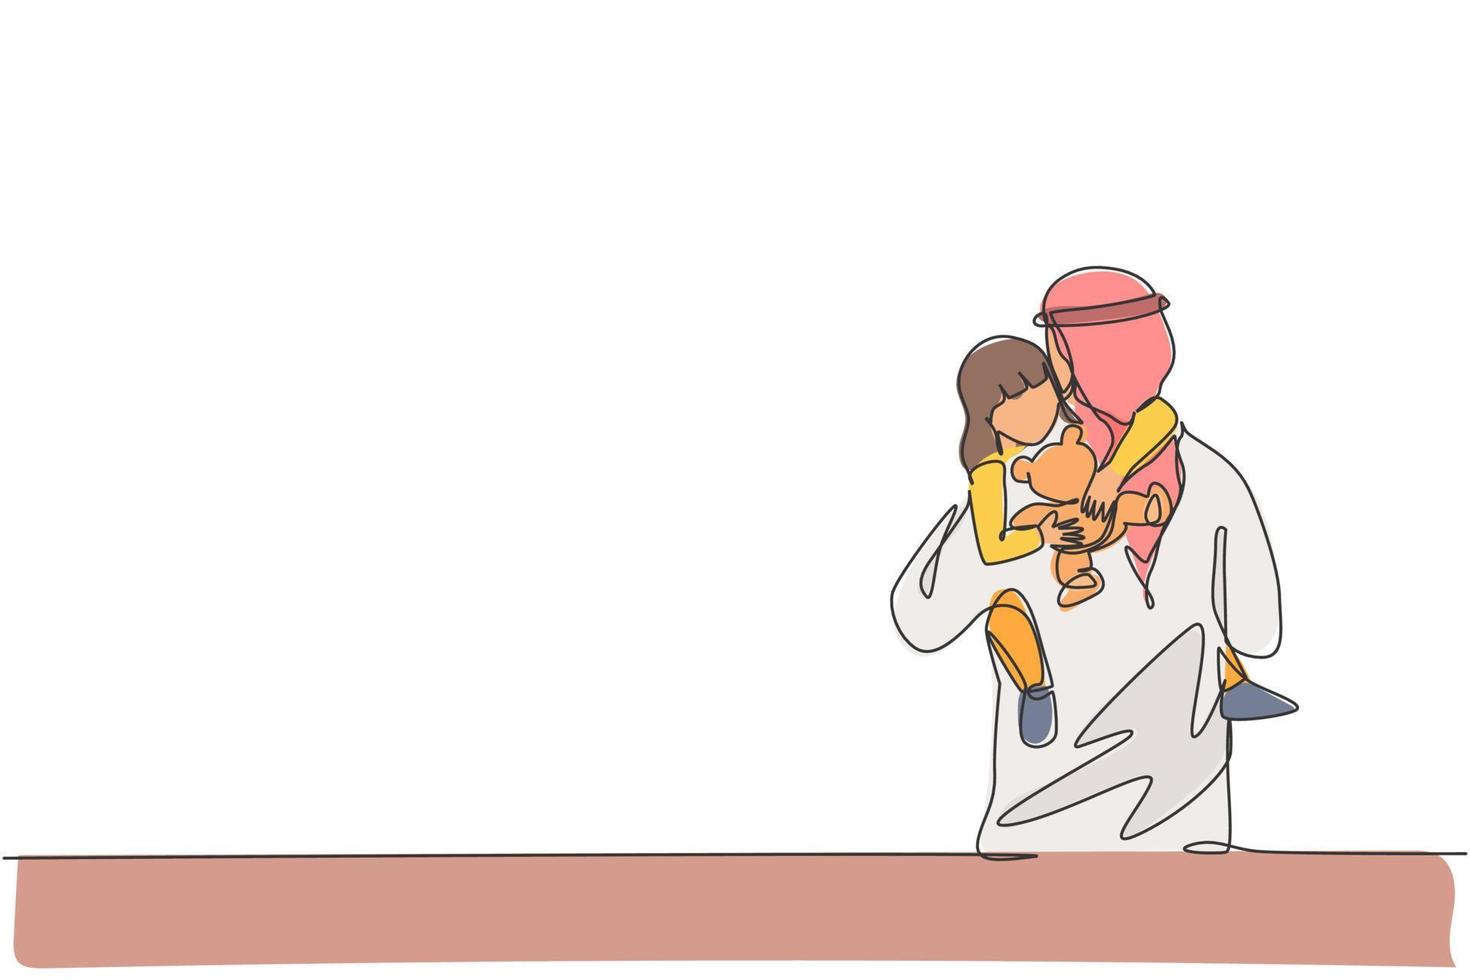 dibujo de una sola línea continua de un joven padre islámico abrazando a su hija adormilada mientras sostiene una muñeca de juguete. concepto de crianza de los hijos de la familia feliz musulmana árabe. Ilustración de vector de diseño de dibujo de una línea